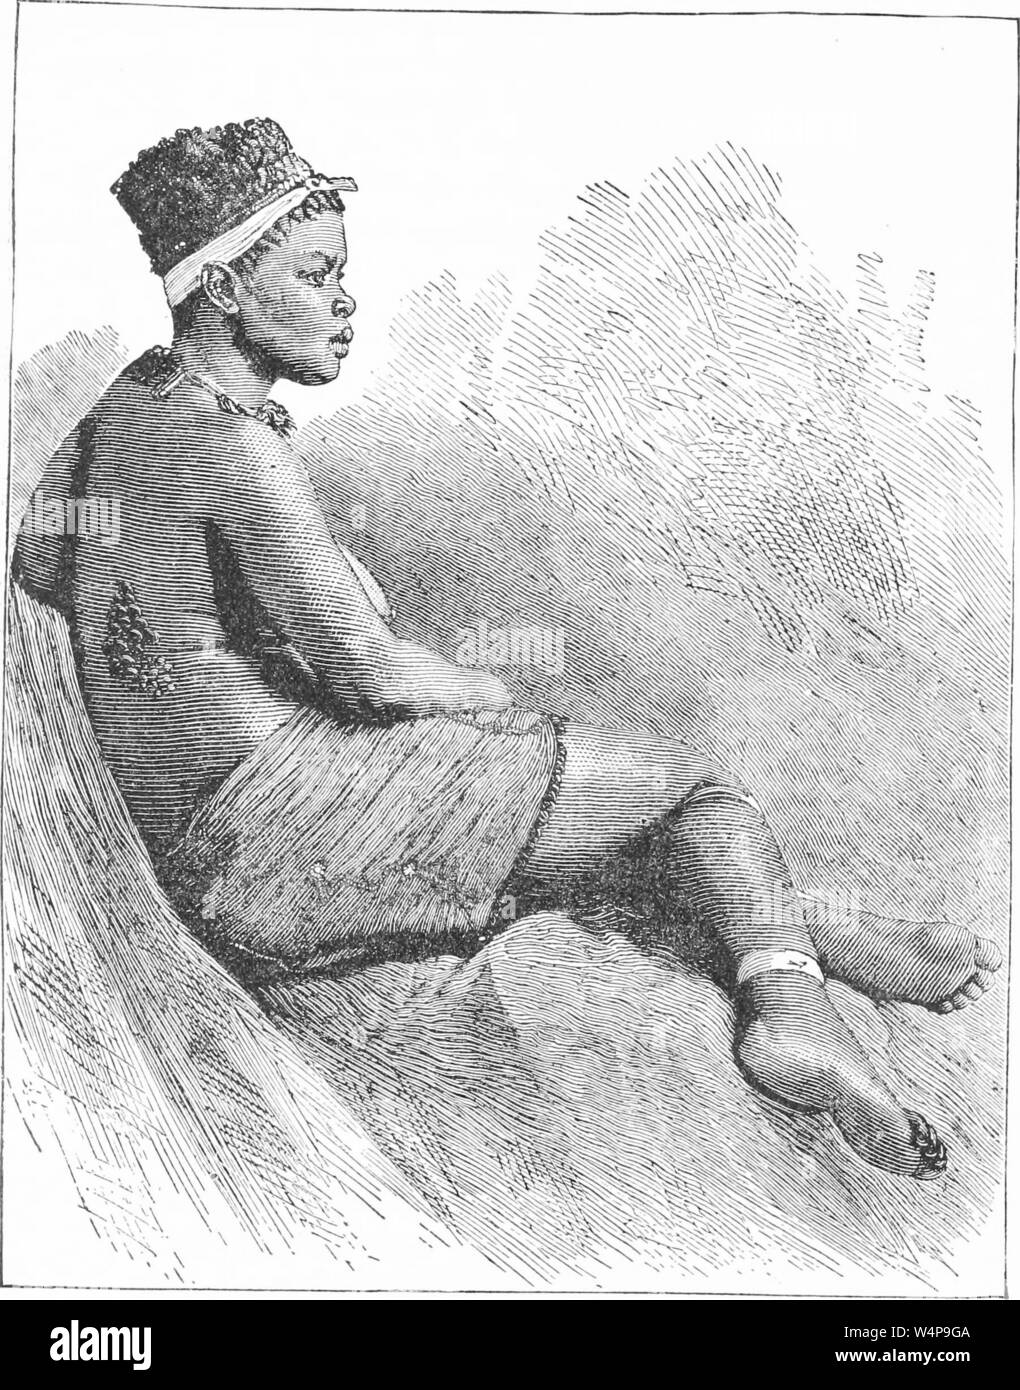 Dessin gravé de la tribu zoulou, femme du livre 'Ridpath's histoire universelle de l' de John Clark Ridpath, 1897. Avec la permission de Internet Archive. () Banque D'Images